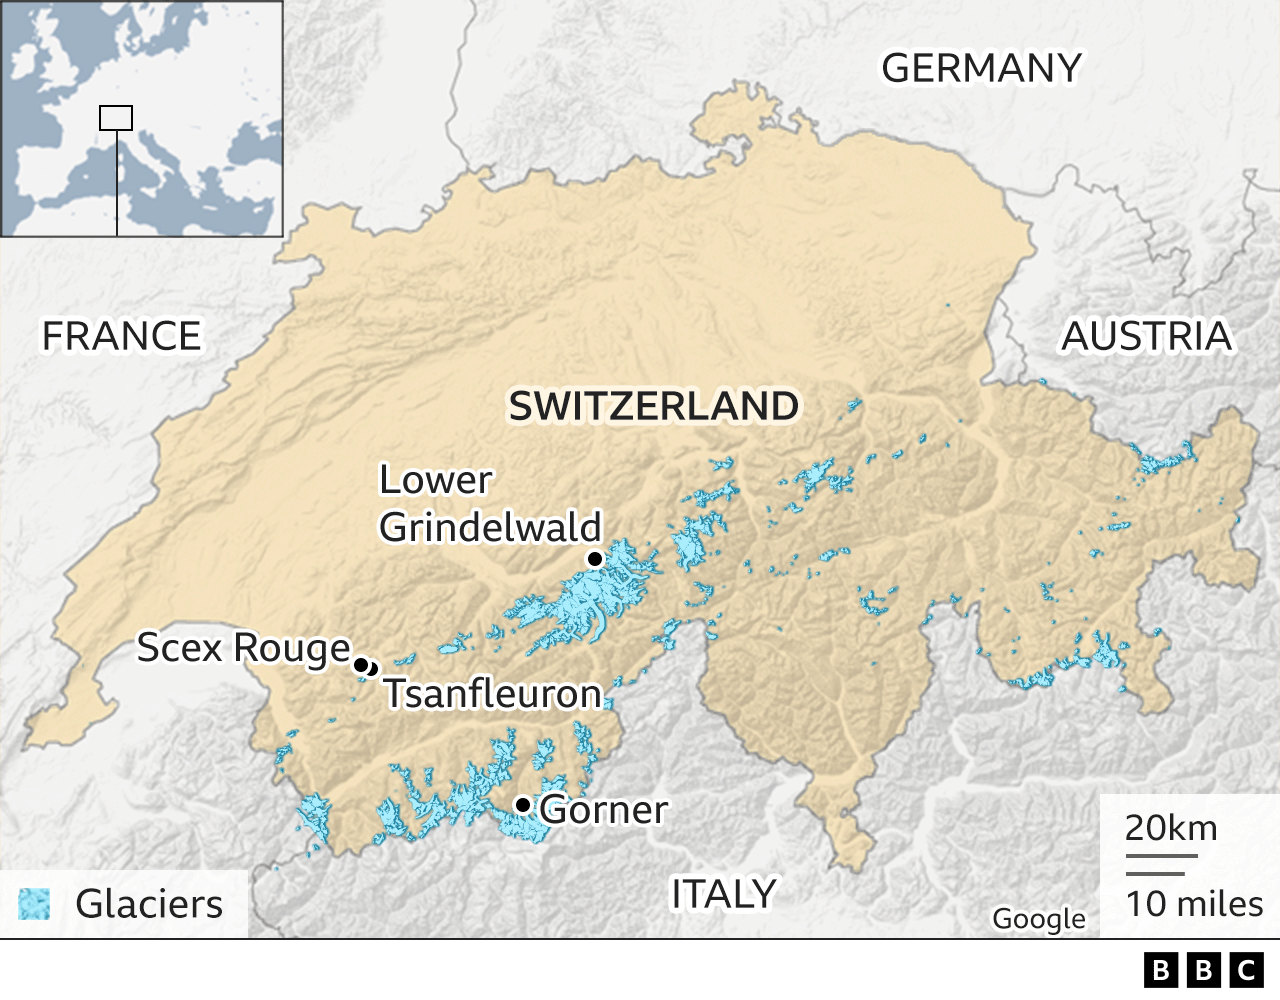 Harta arată locația ghețarului Gorner, Tsanfleuron și Scex Rouge în Alpii elvețieni